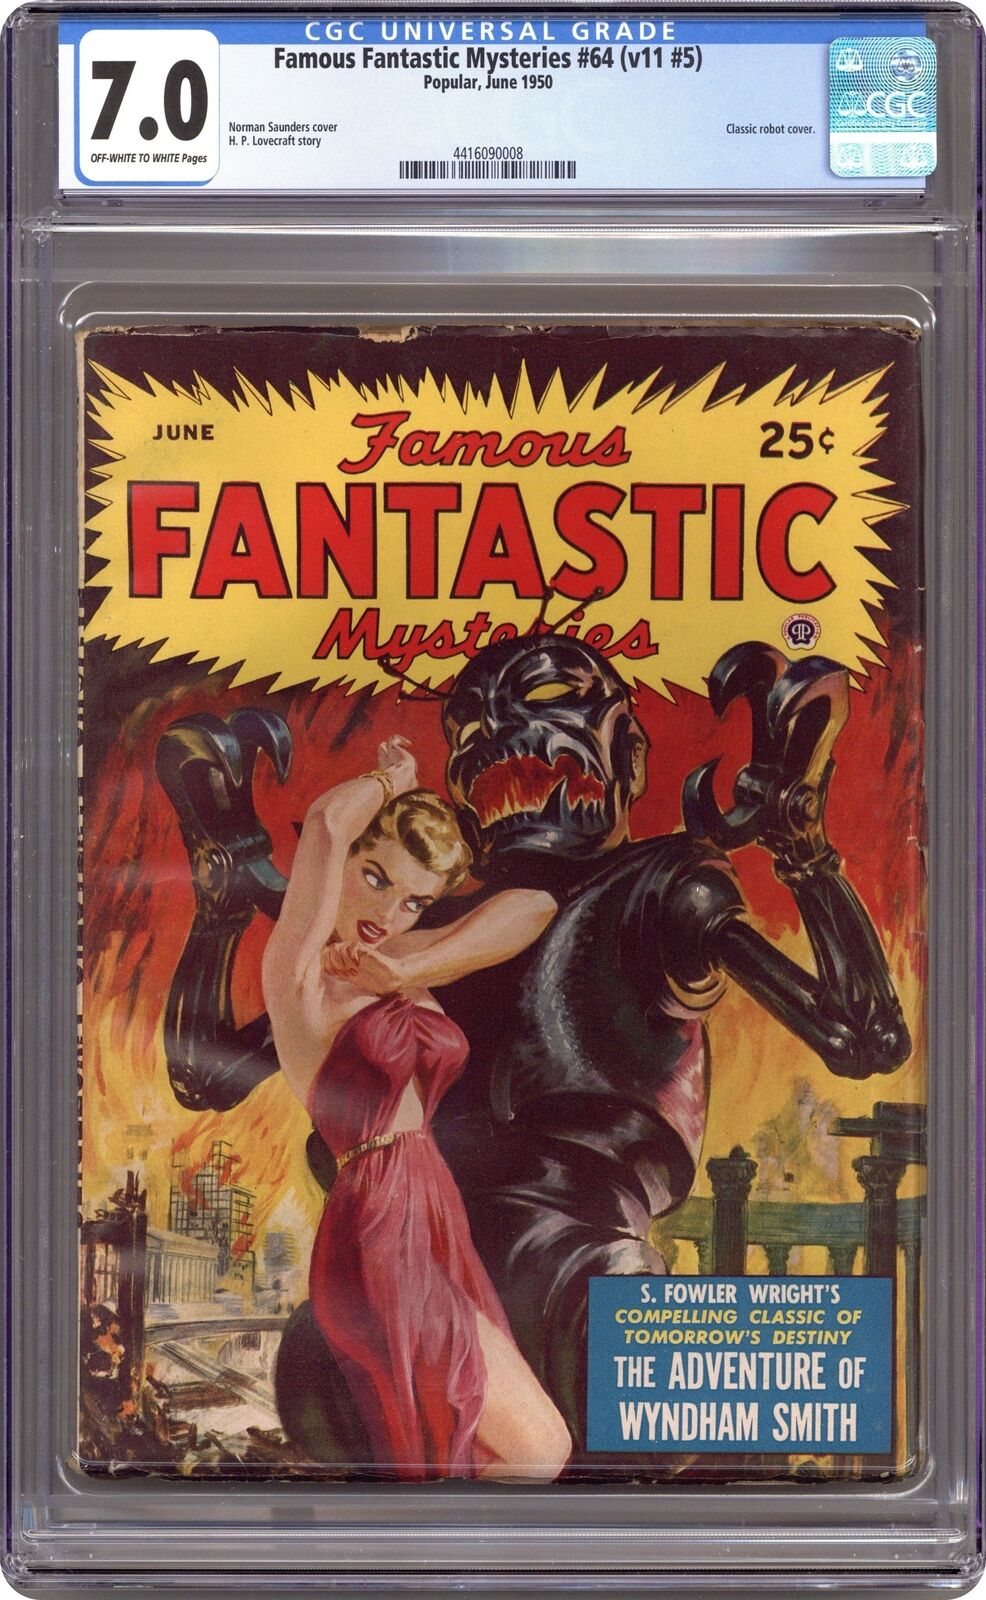 Famous Fantastic Mysteries Pulp Jun 1950 Vol. 11 #5 CGC 7.0 4416090008